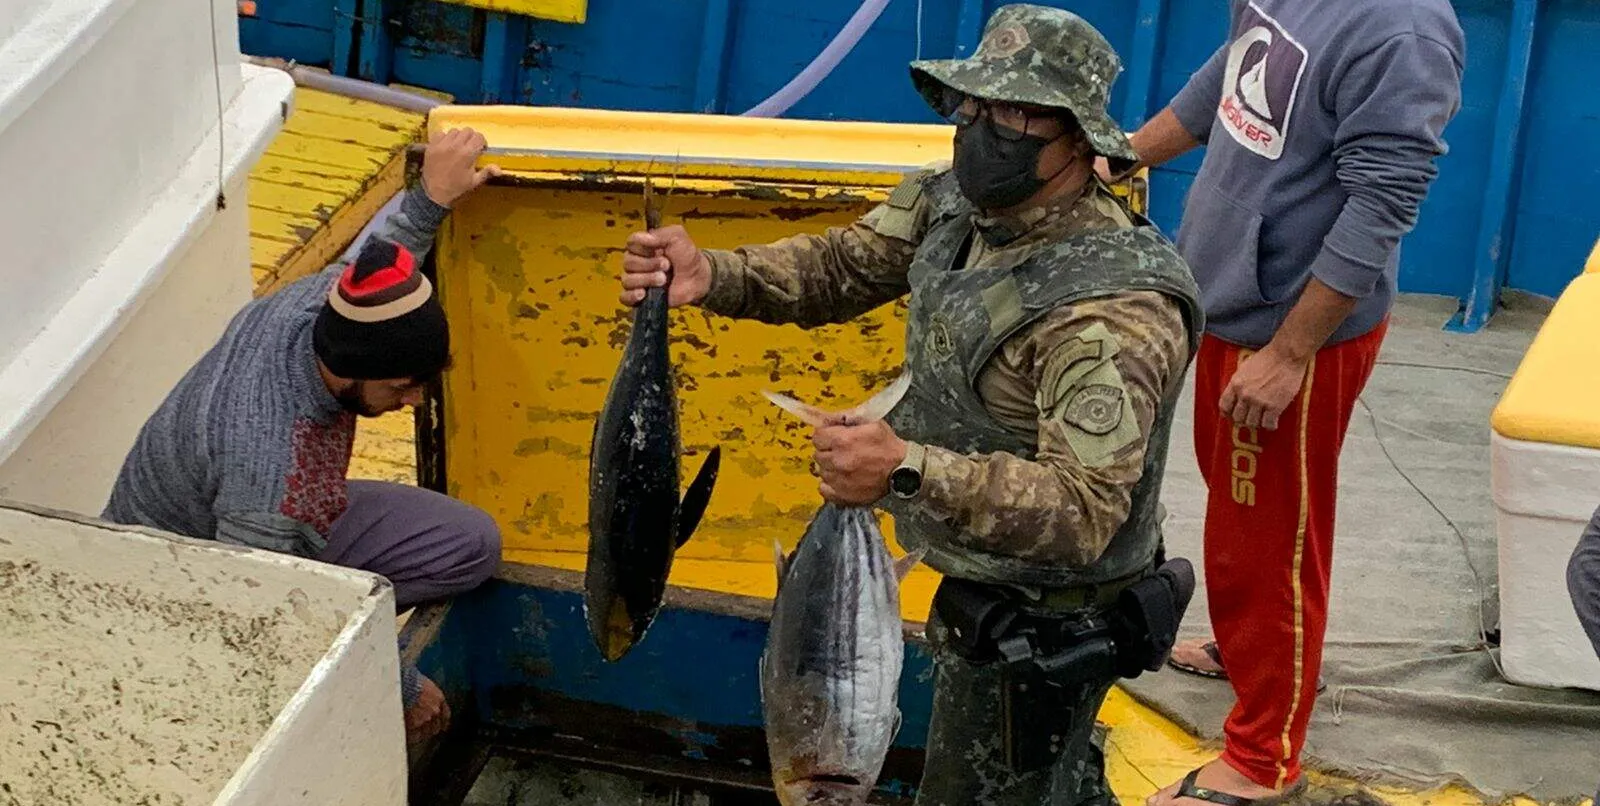  Porto de Santos é alvo de operação de combate ao tráfico e pesca ilegal 